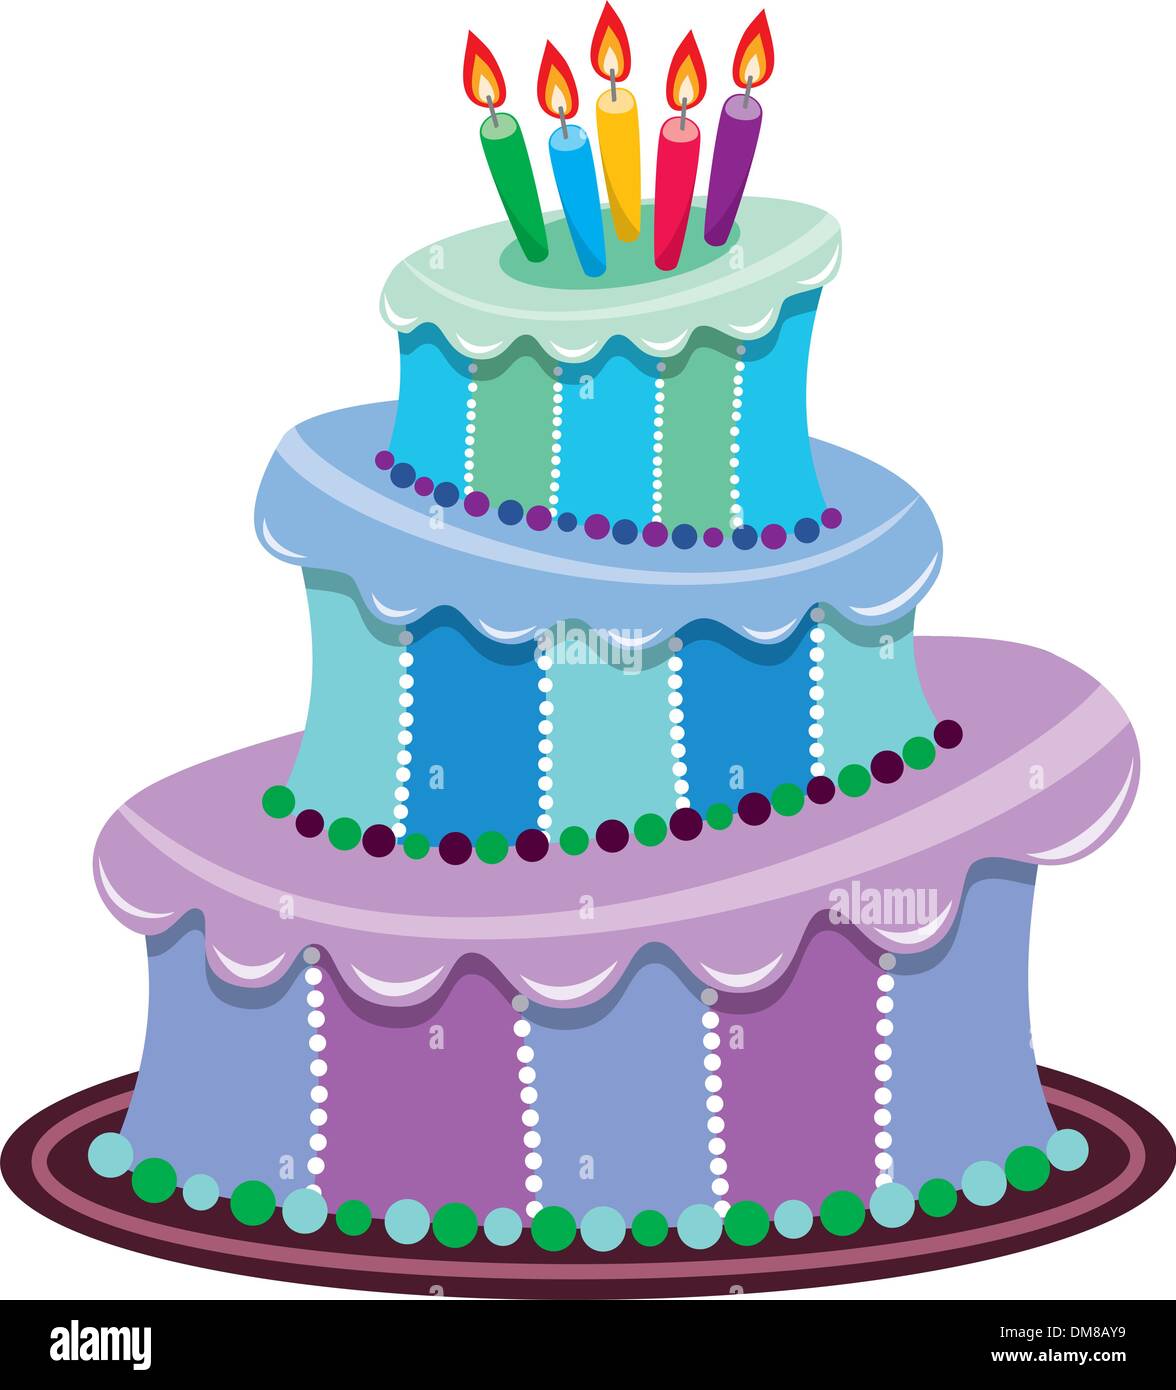 Grand gâteau d'anniversaire Illustration de Vecteur